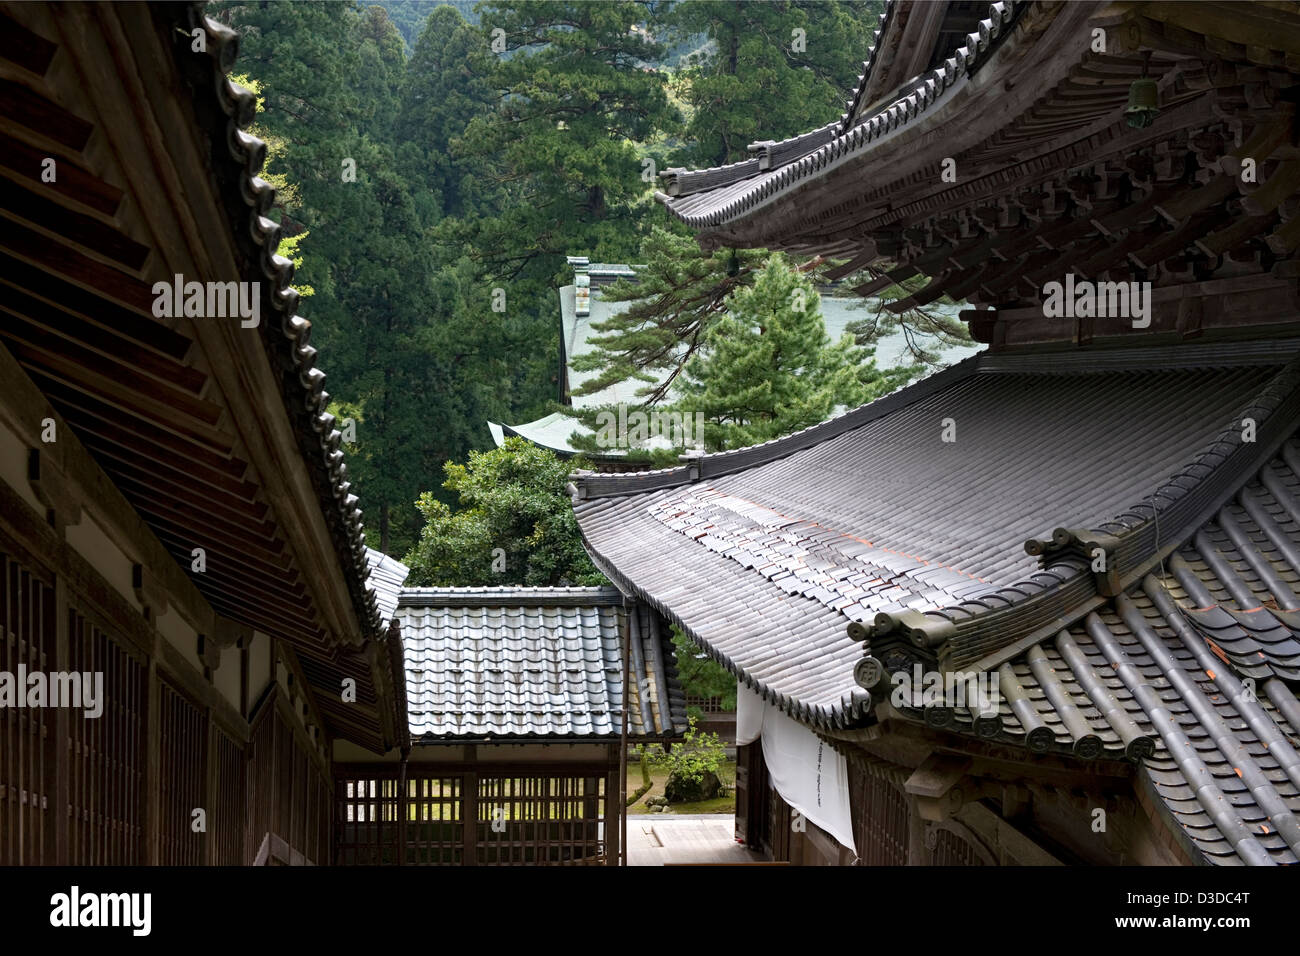 Hillside edificios históricos y los tejados de la secta Soto Zen Eiheiji templo budista en el verde bosque de pinos de Fukui, Japón. Foto de stock